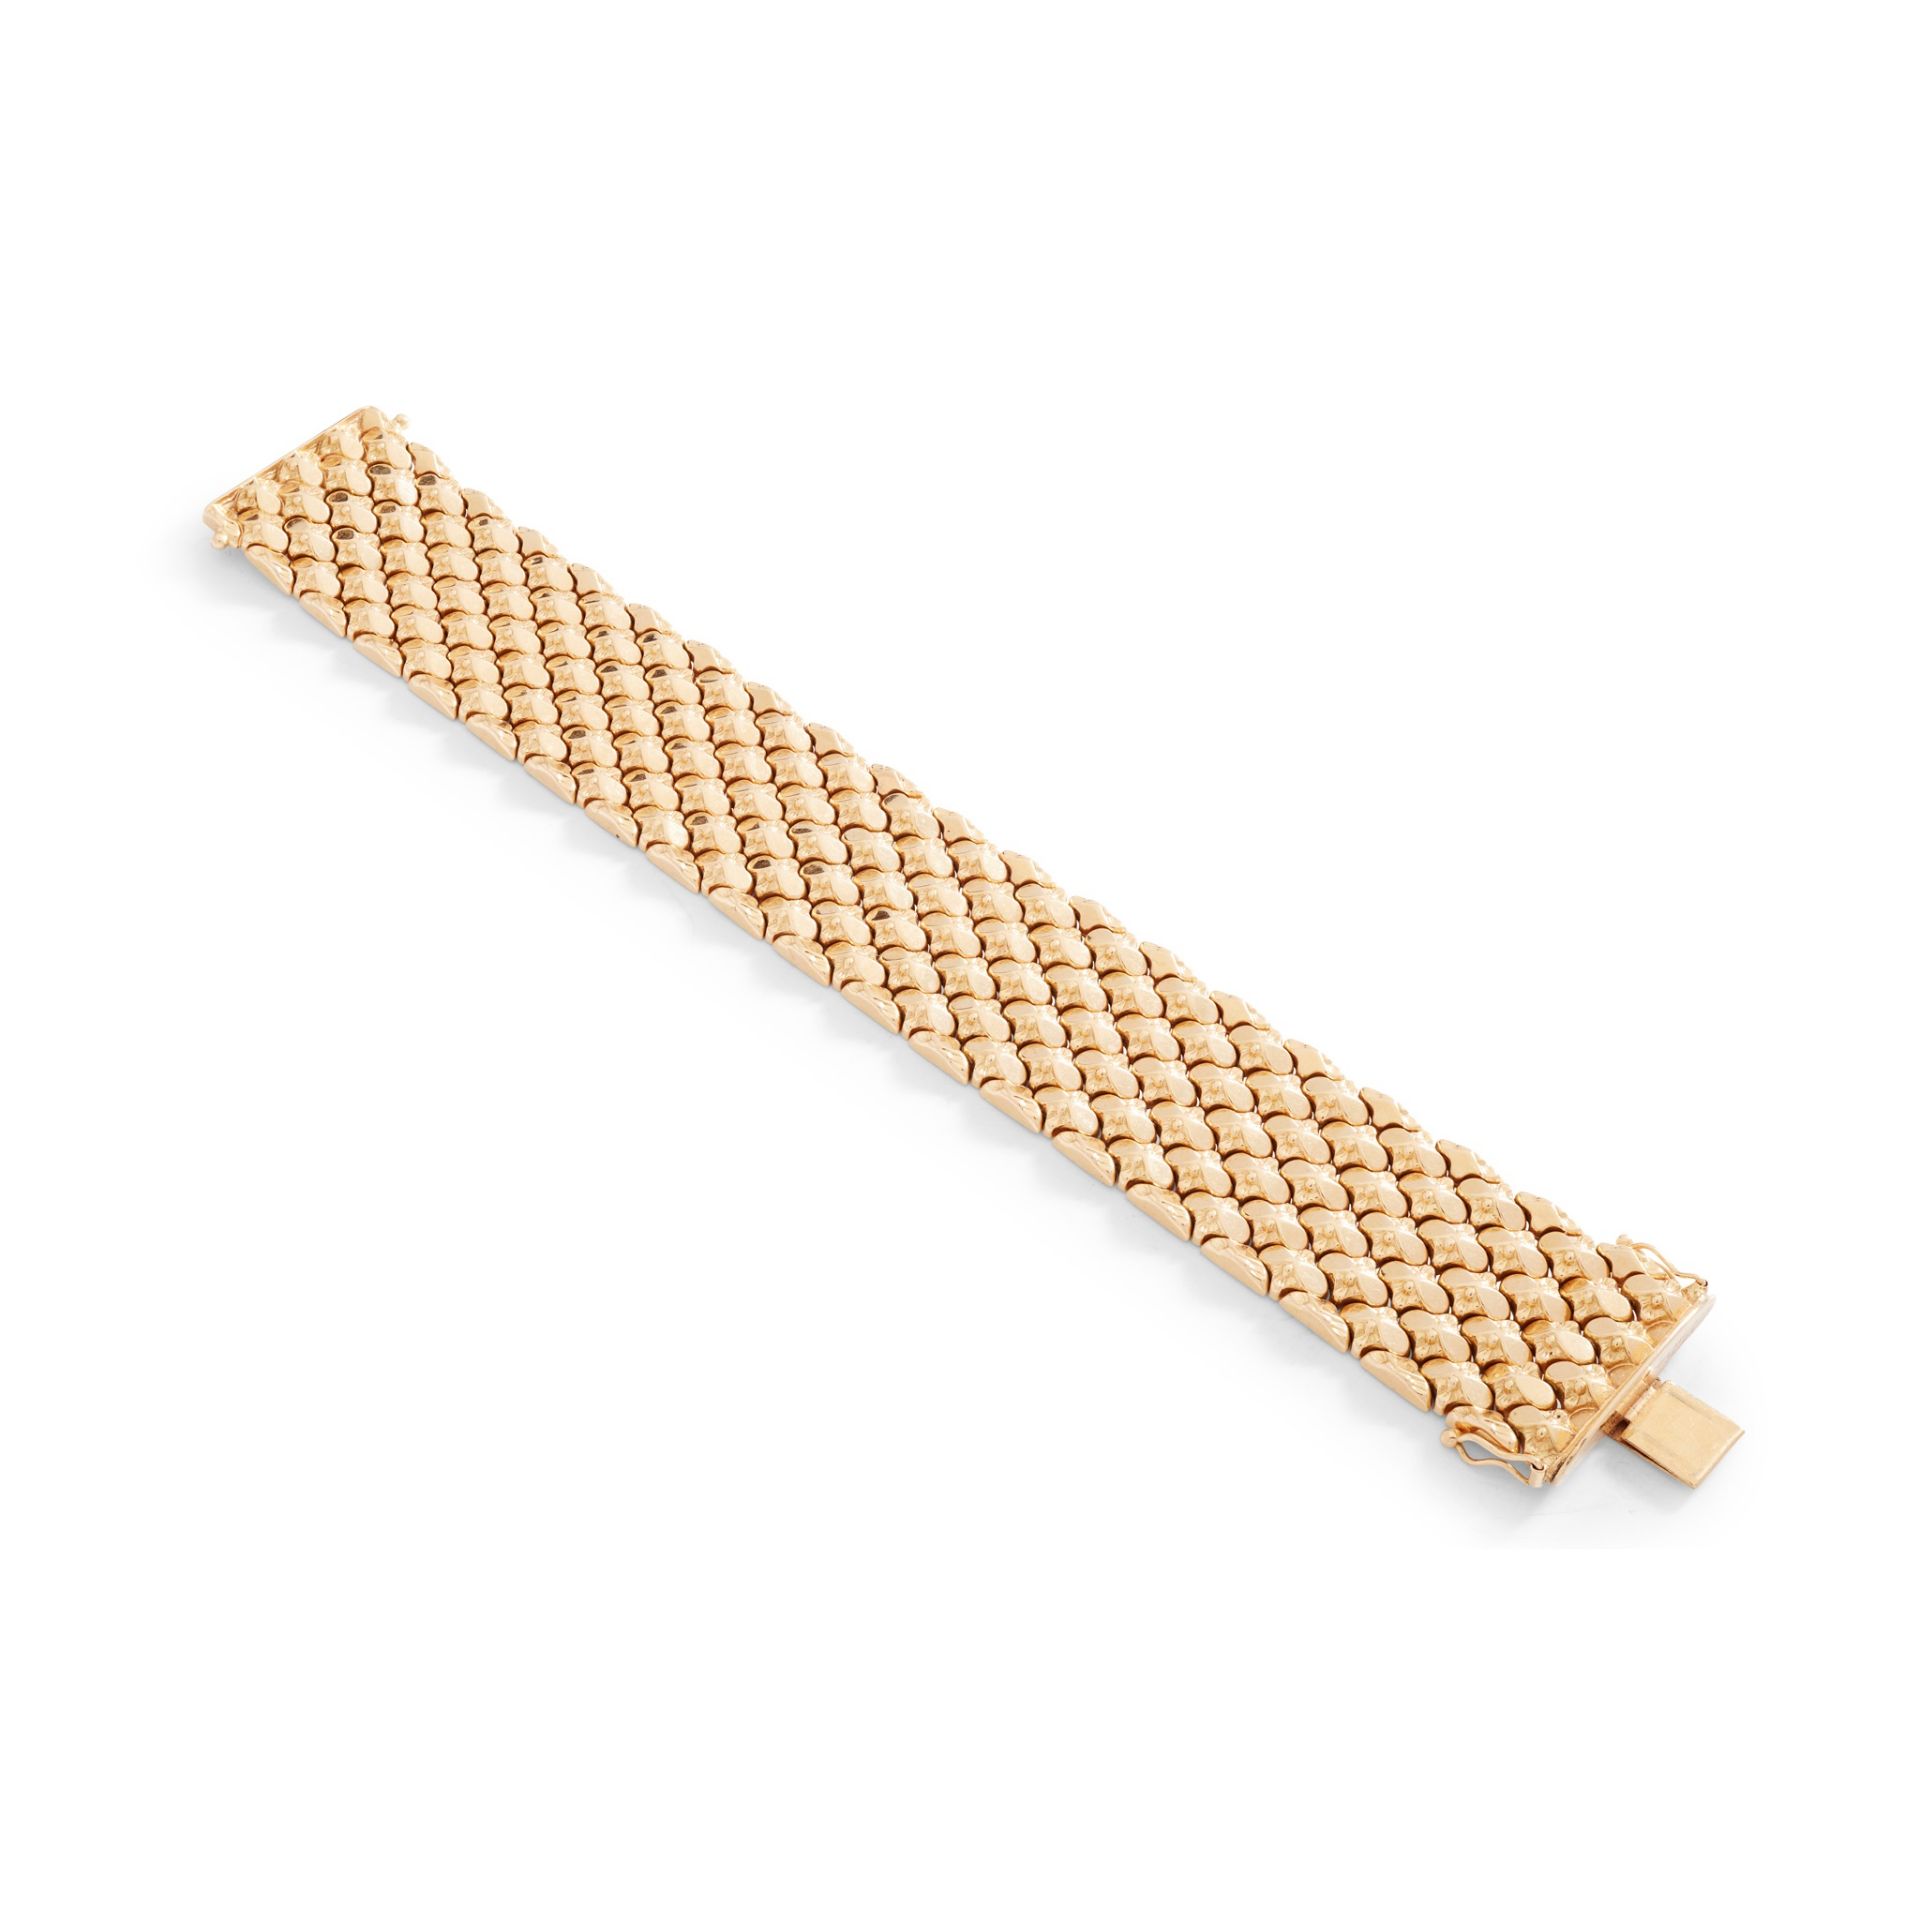 A broad link bracelet